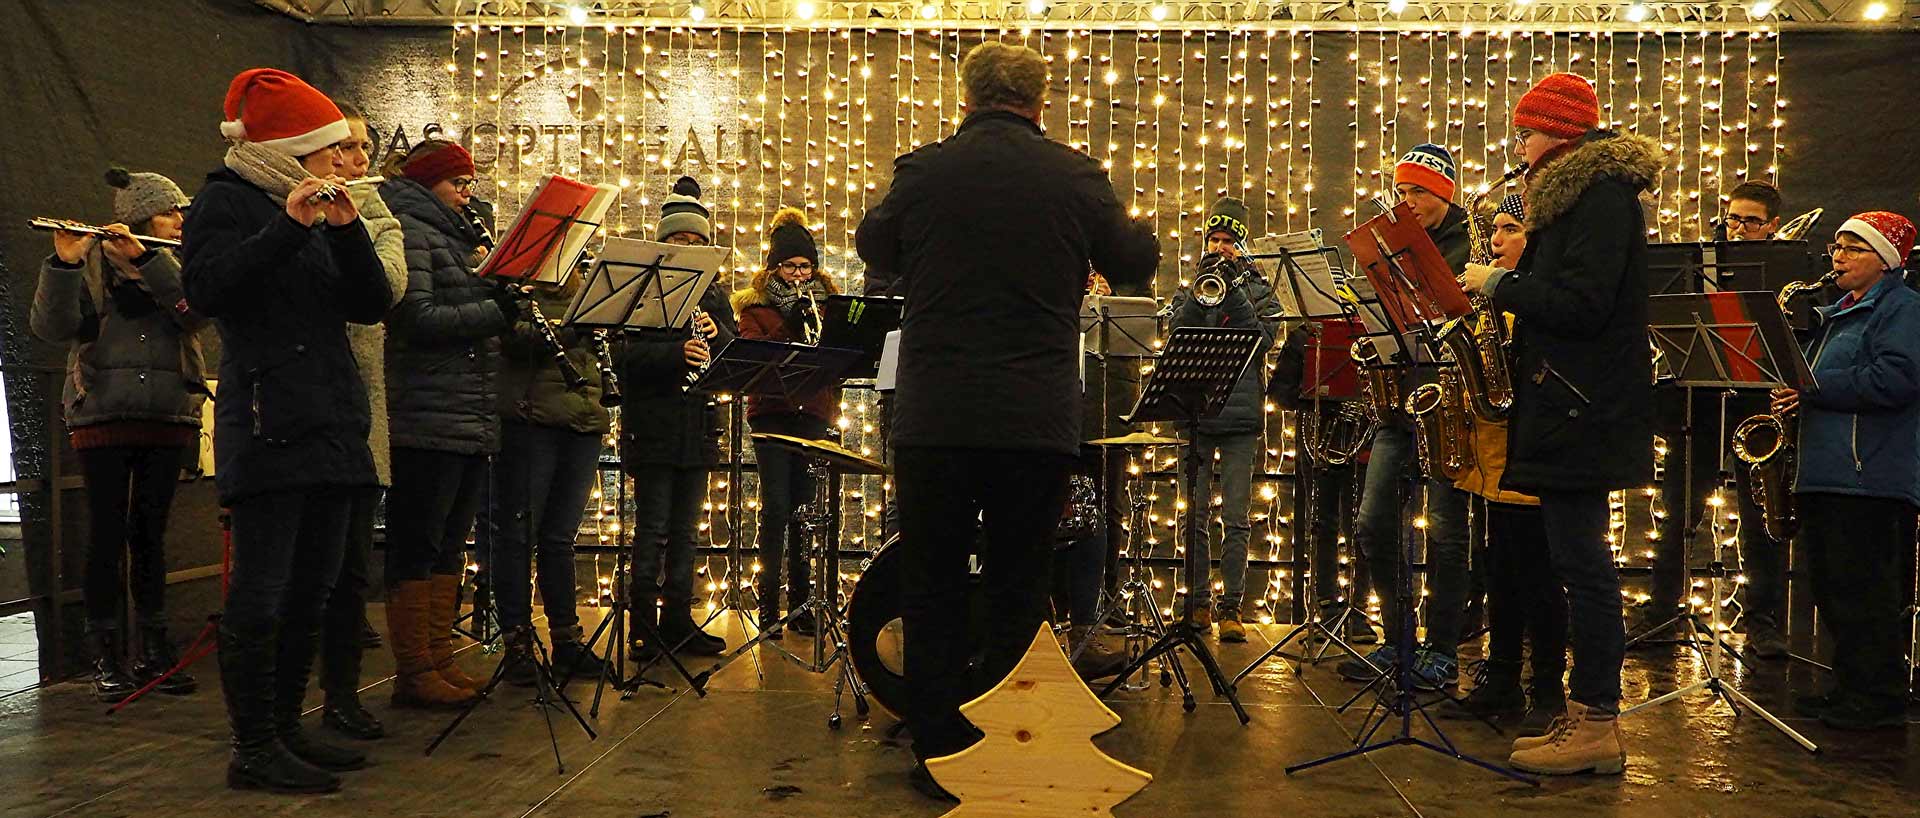 Die Jugendblaskapelle der Städtischen Sing- und Musikschule sorgten für eine würdige und unterhaltsame musikalische Umrahmung der Eröffnung des Kelheimer Christkindlmarktes (Foto: br-medienagentur)